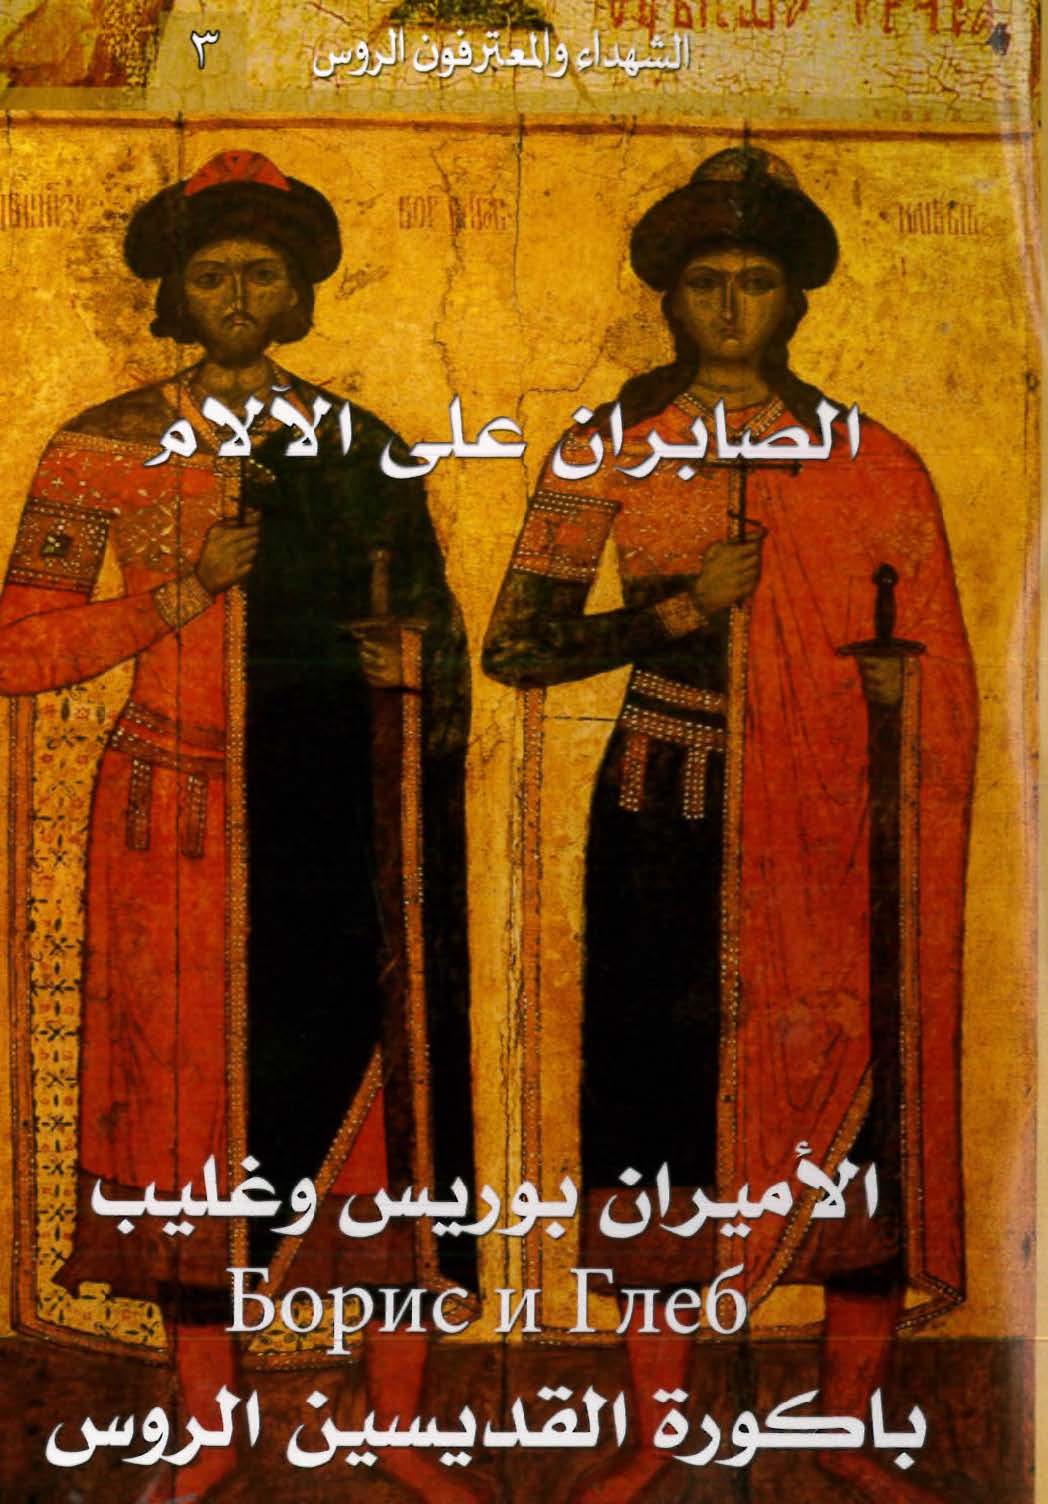 كتاب الصابران على الآلام، الأميران بوريس وغليب، باكورة القديسين الروس - عامر هلسا